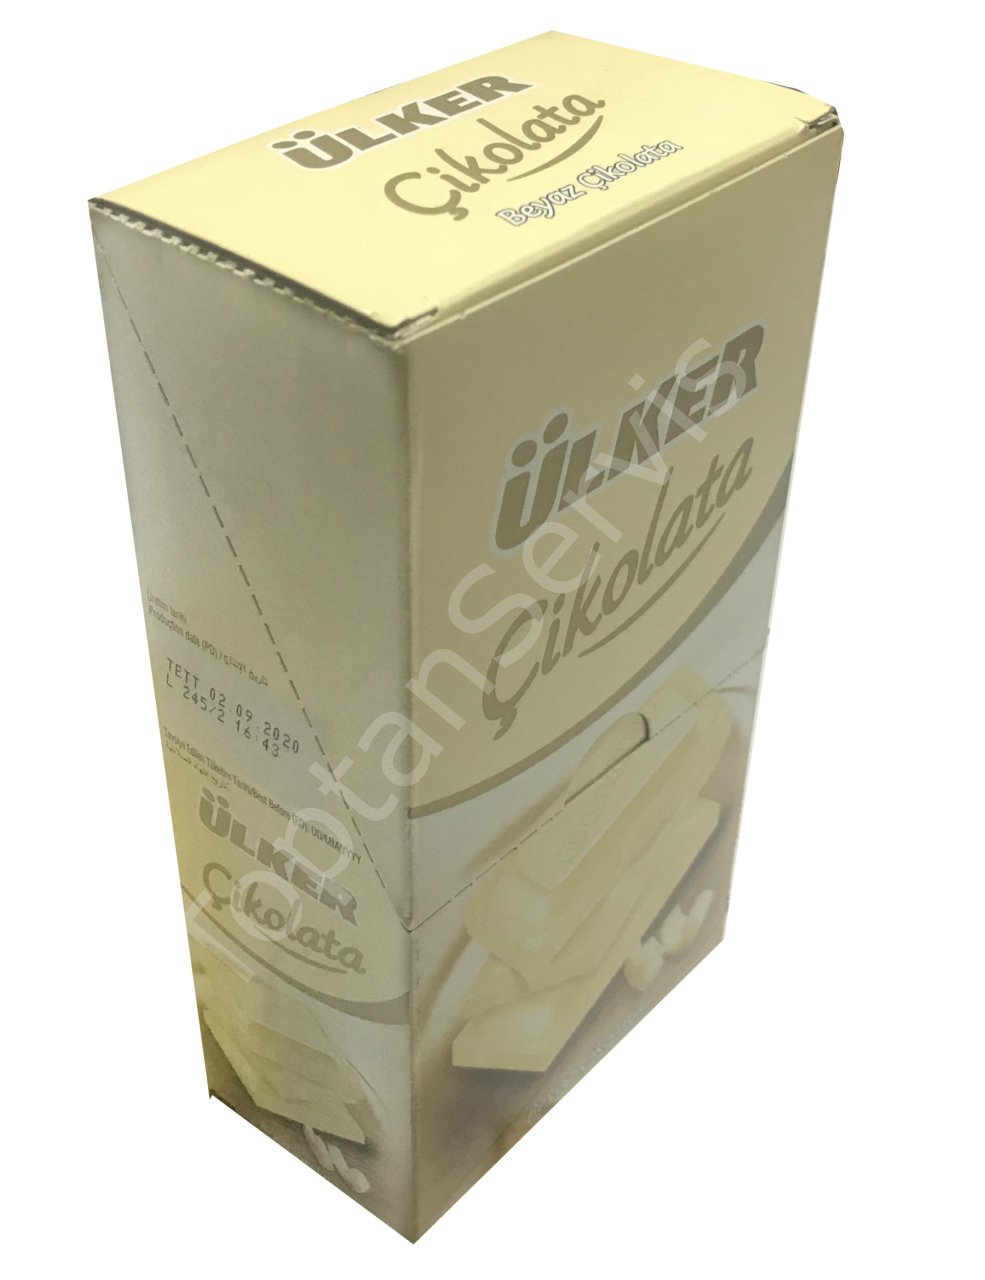 ÜLKERÜlker Beyaz Tablet Çikolata 80gr 6 Adet30,50 TL